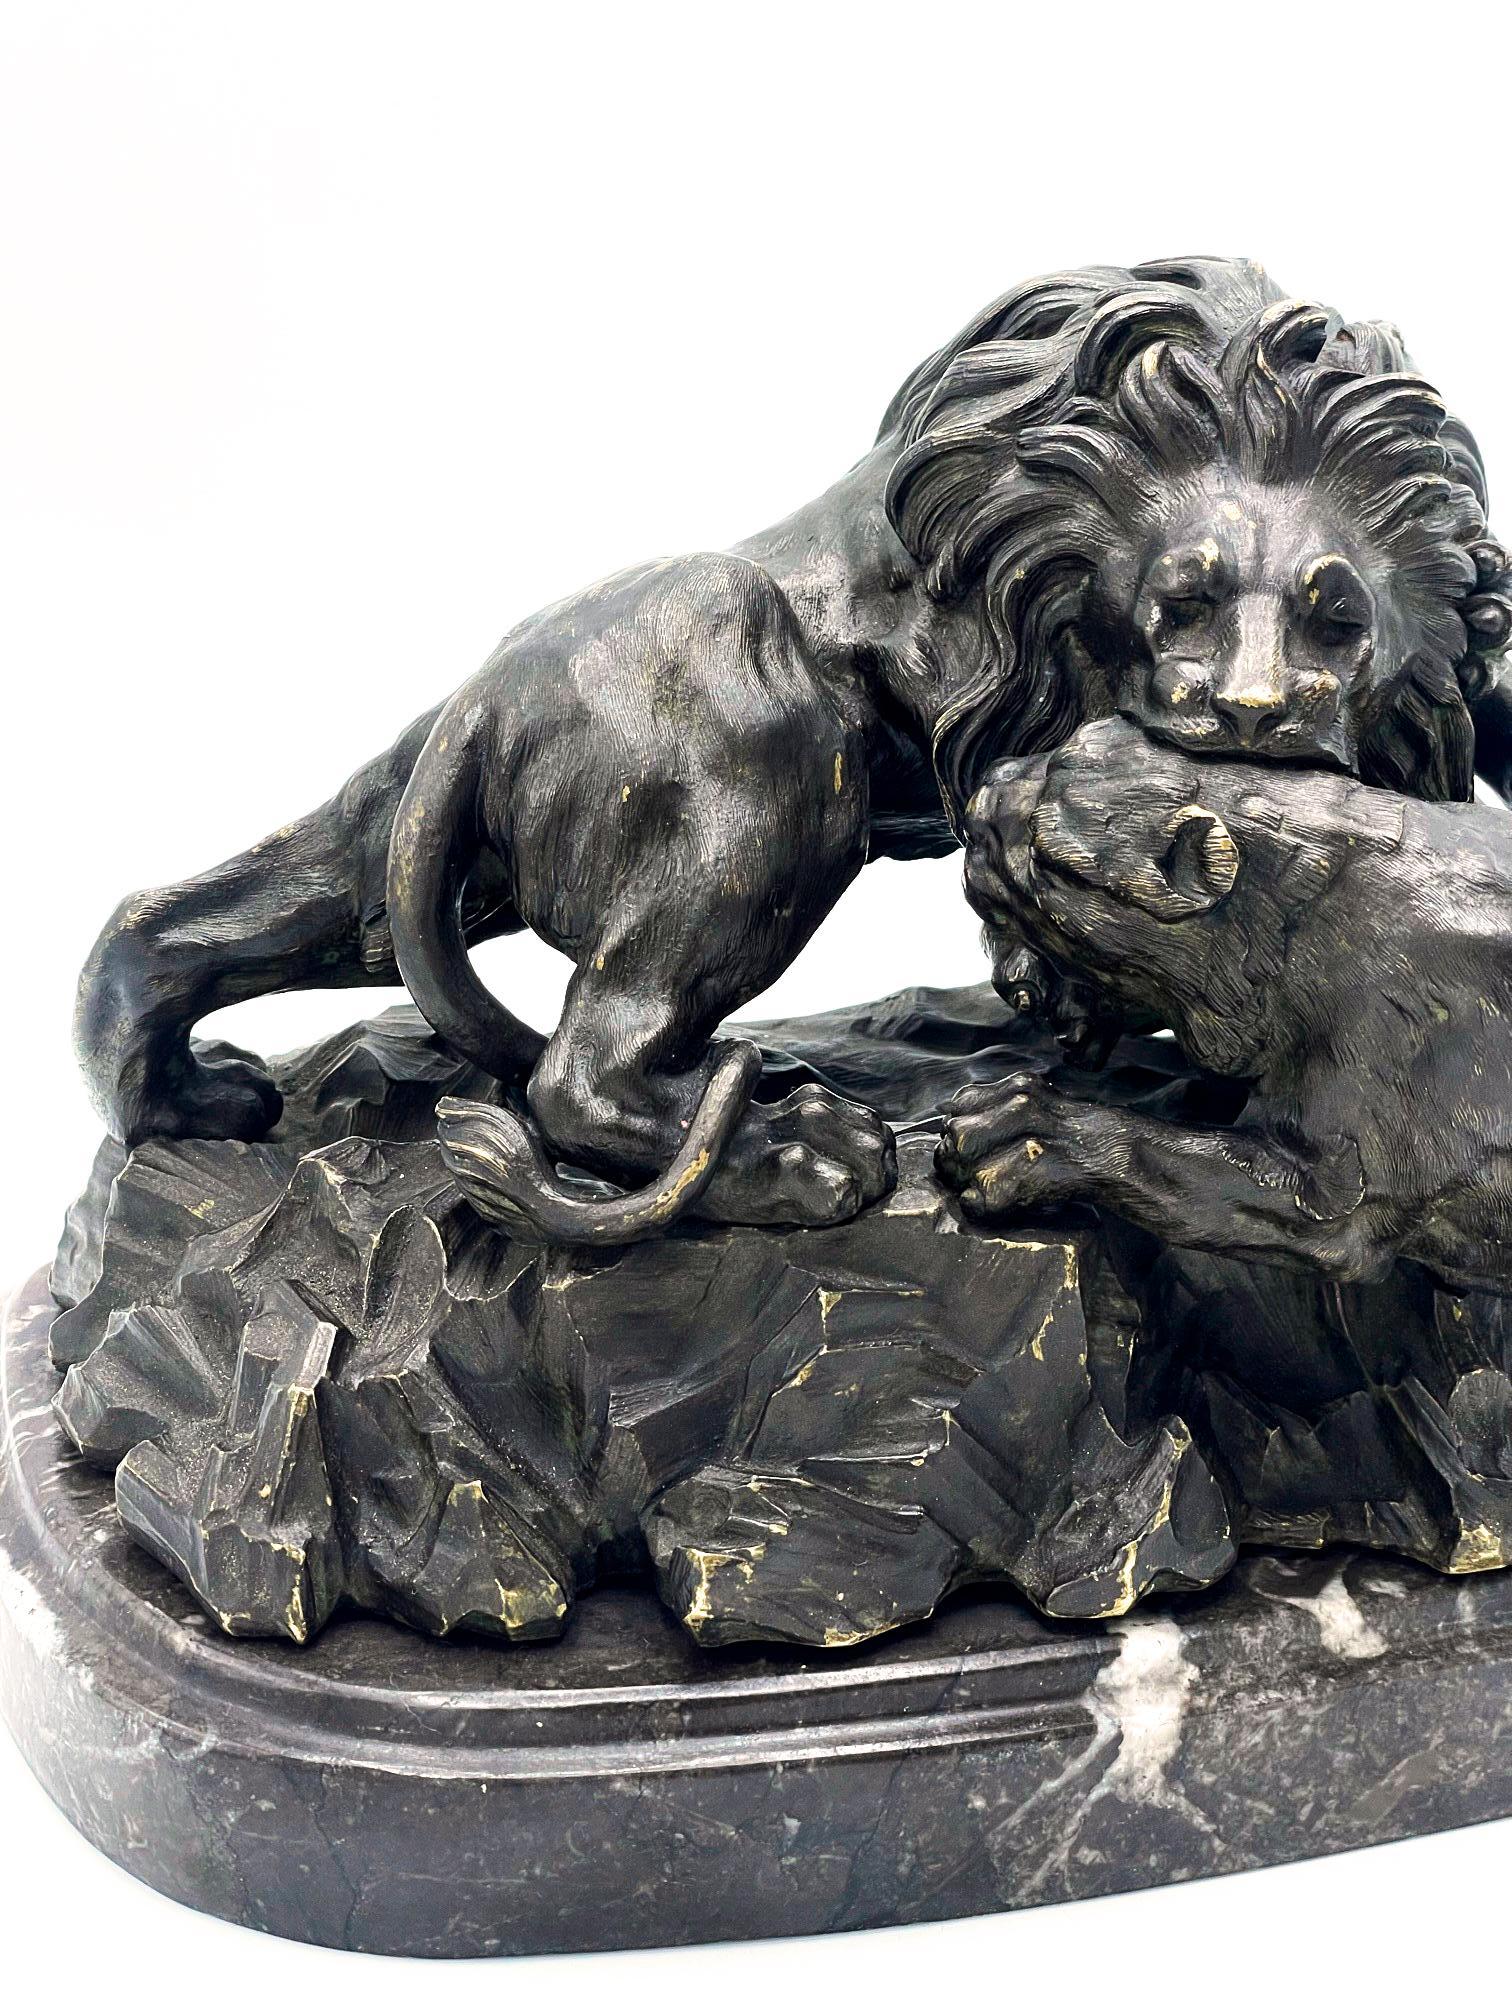 Antoine-Louis Barye (Paris, 1795-1875). Un lion écrase un léopard. 
Bronze à patine brune signé Barye sur le côté gauche de la base. La sculpture en bronze repose sur un socle en marbre noir.

Ce bronze spectaculaire représentant le 